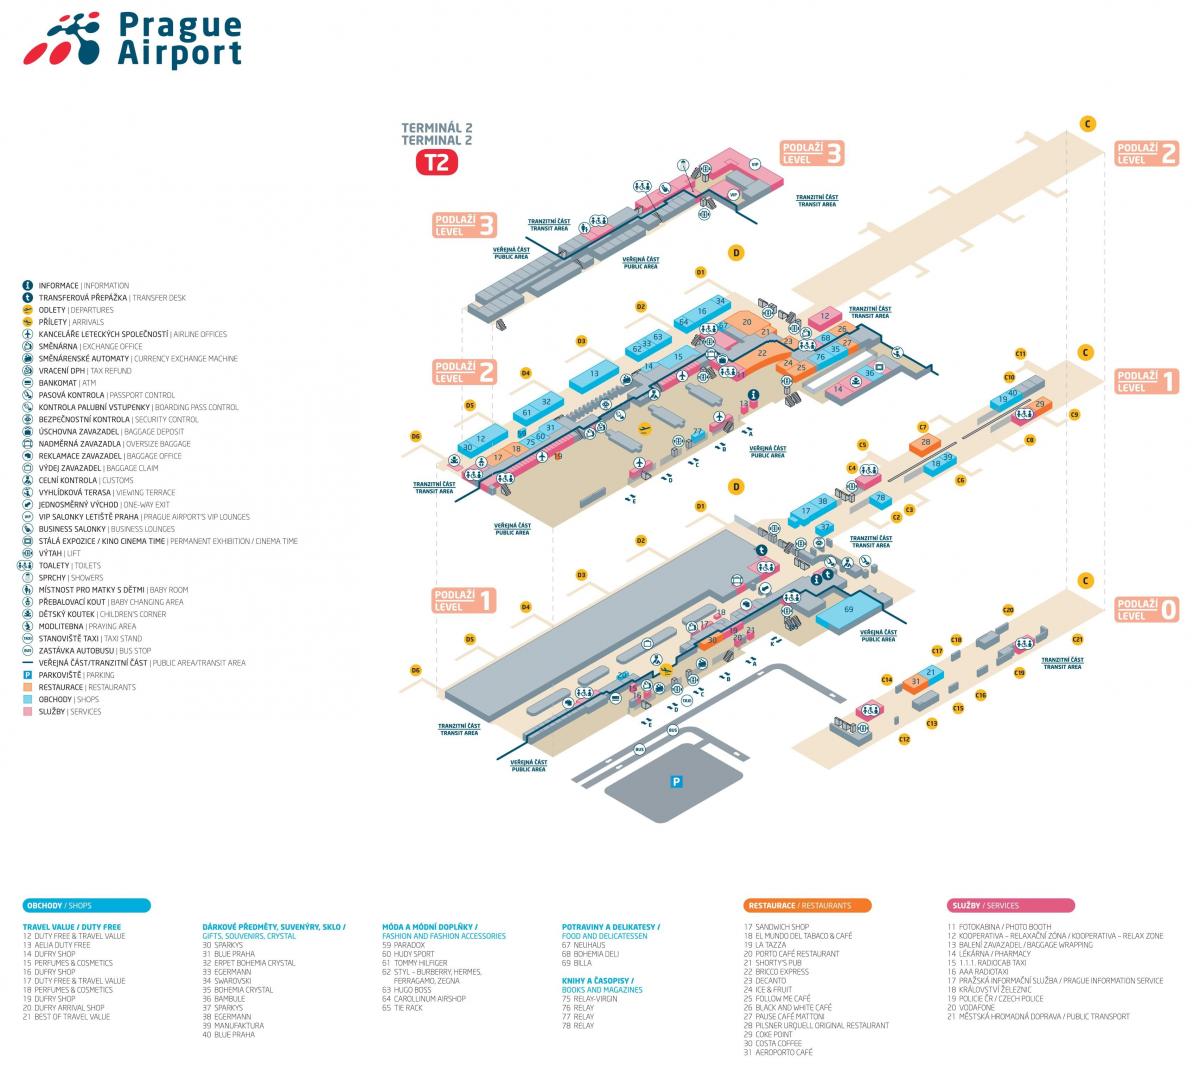 kaart van praag airport terminal 2